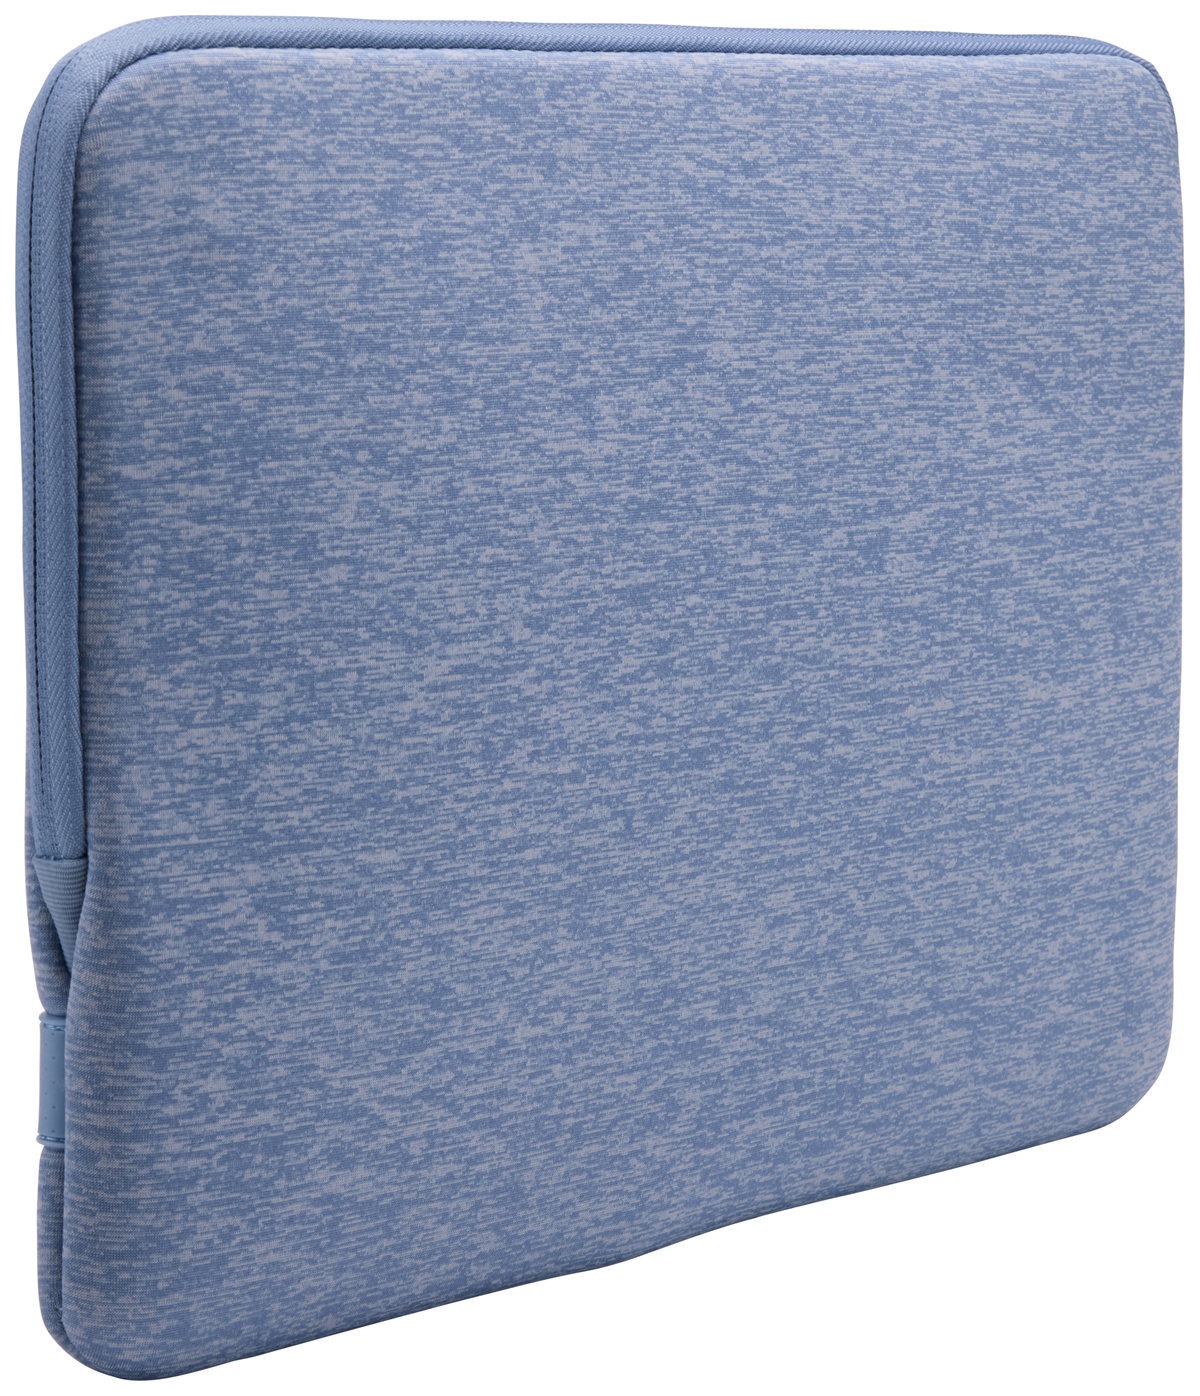 Blau LOGIC Polyester für 3204878 und CASE Holster Schaumstoff, Notebooktasche Universal